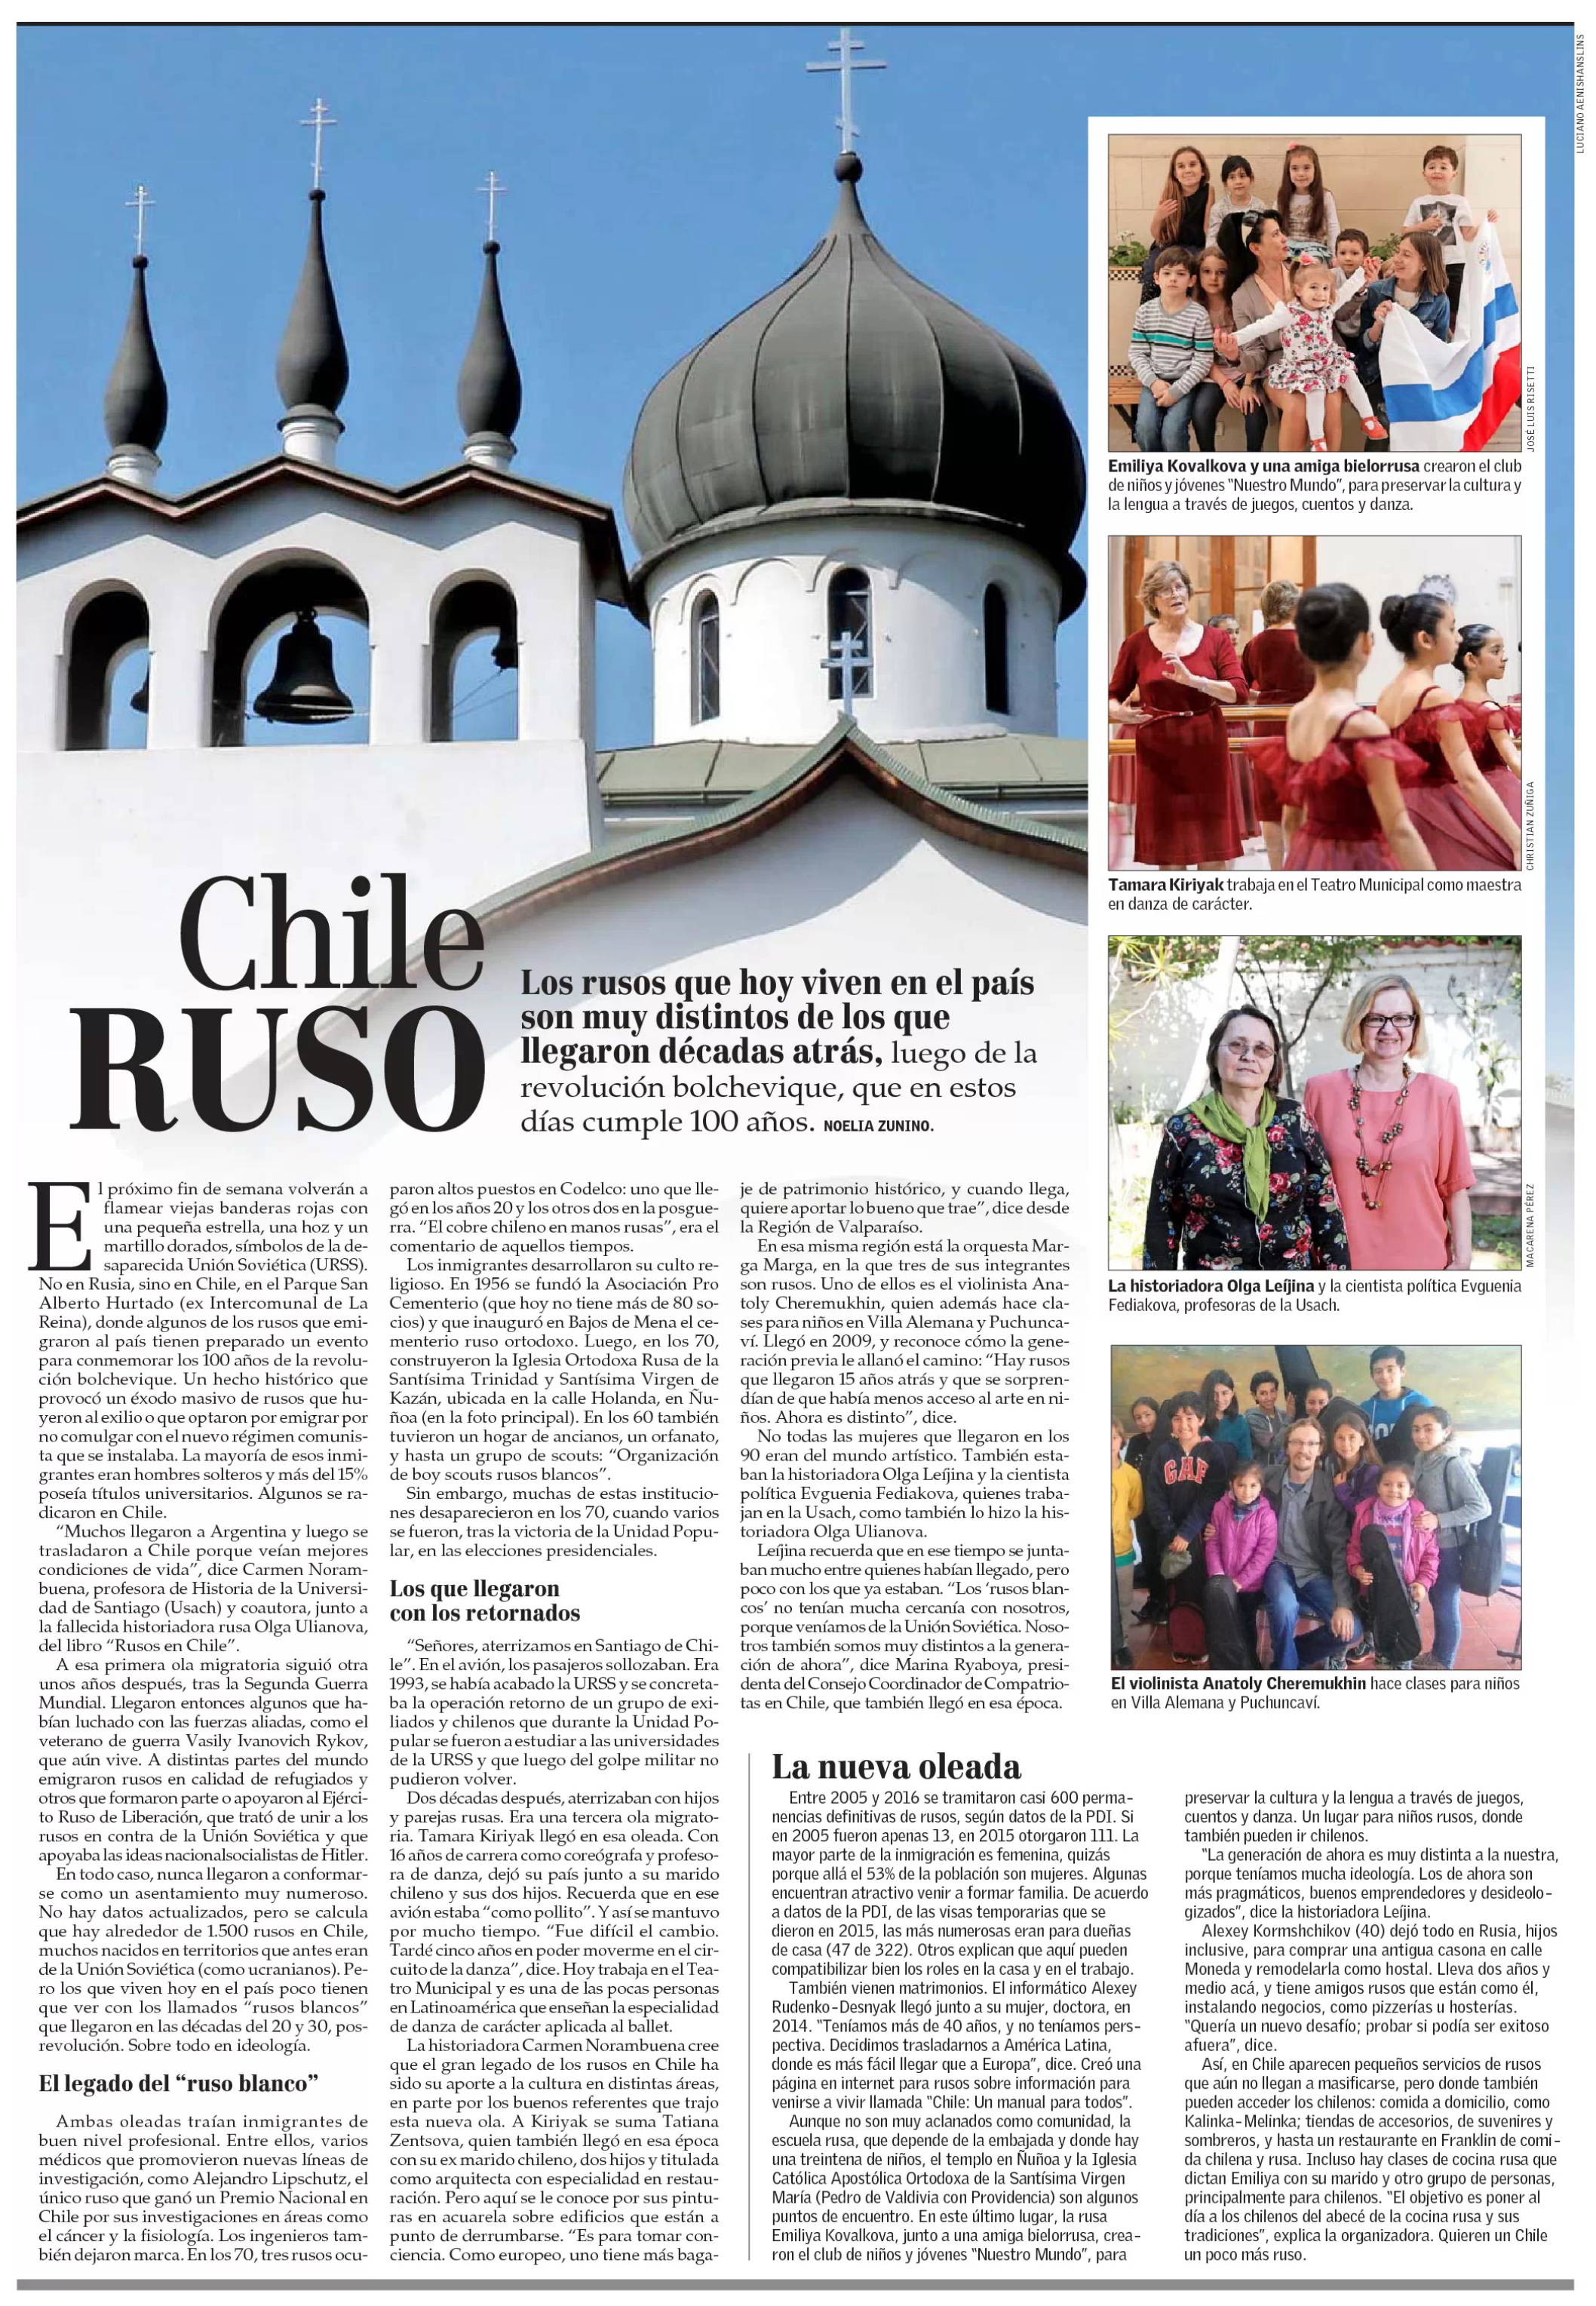 Статья Chile Ruso, 28 октября 2017 года, газета El Mercurio.